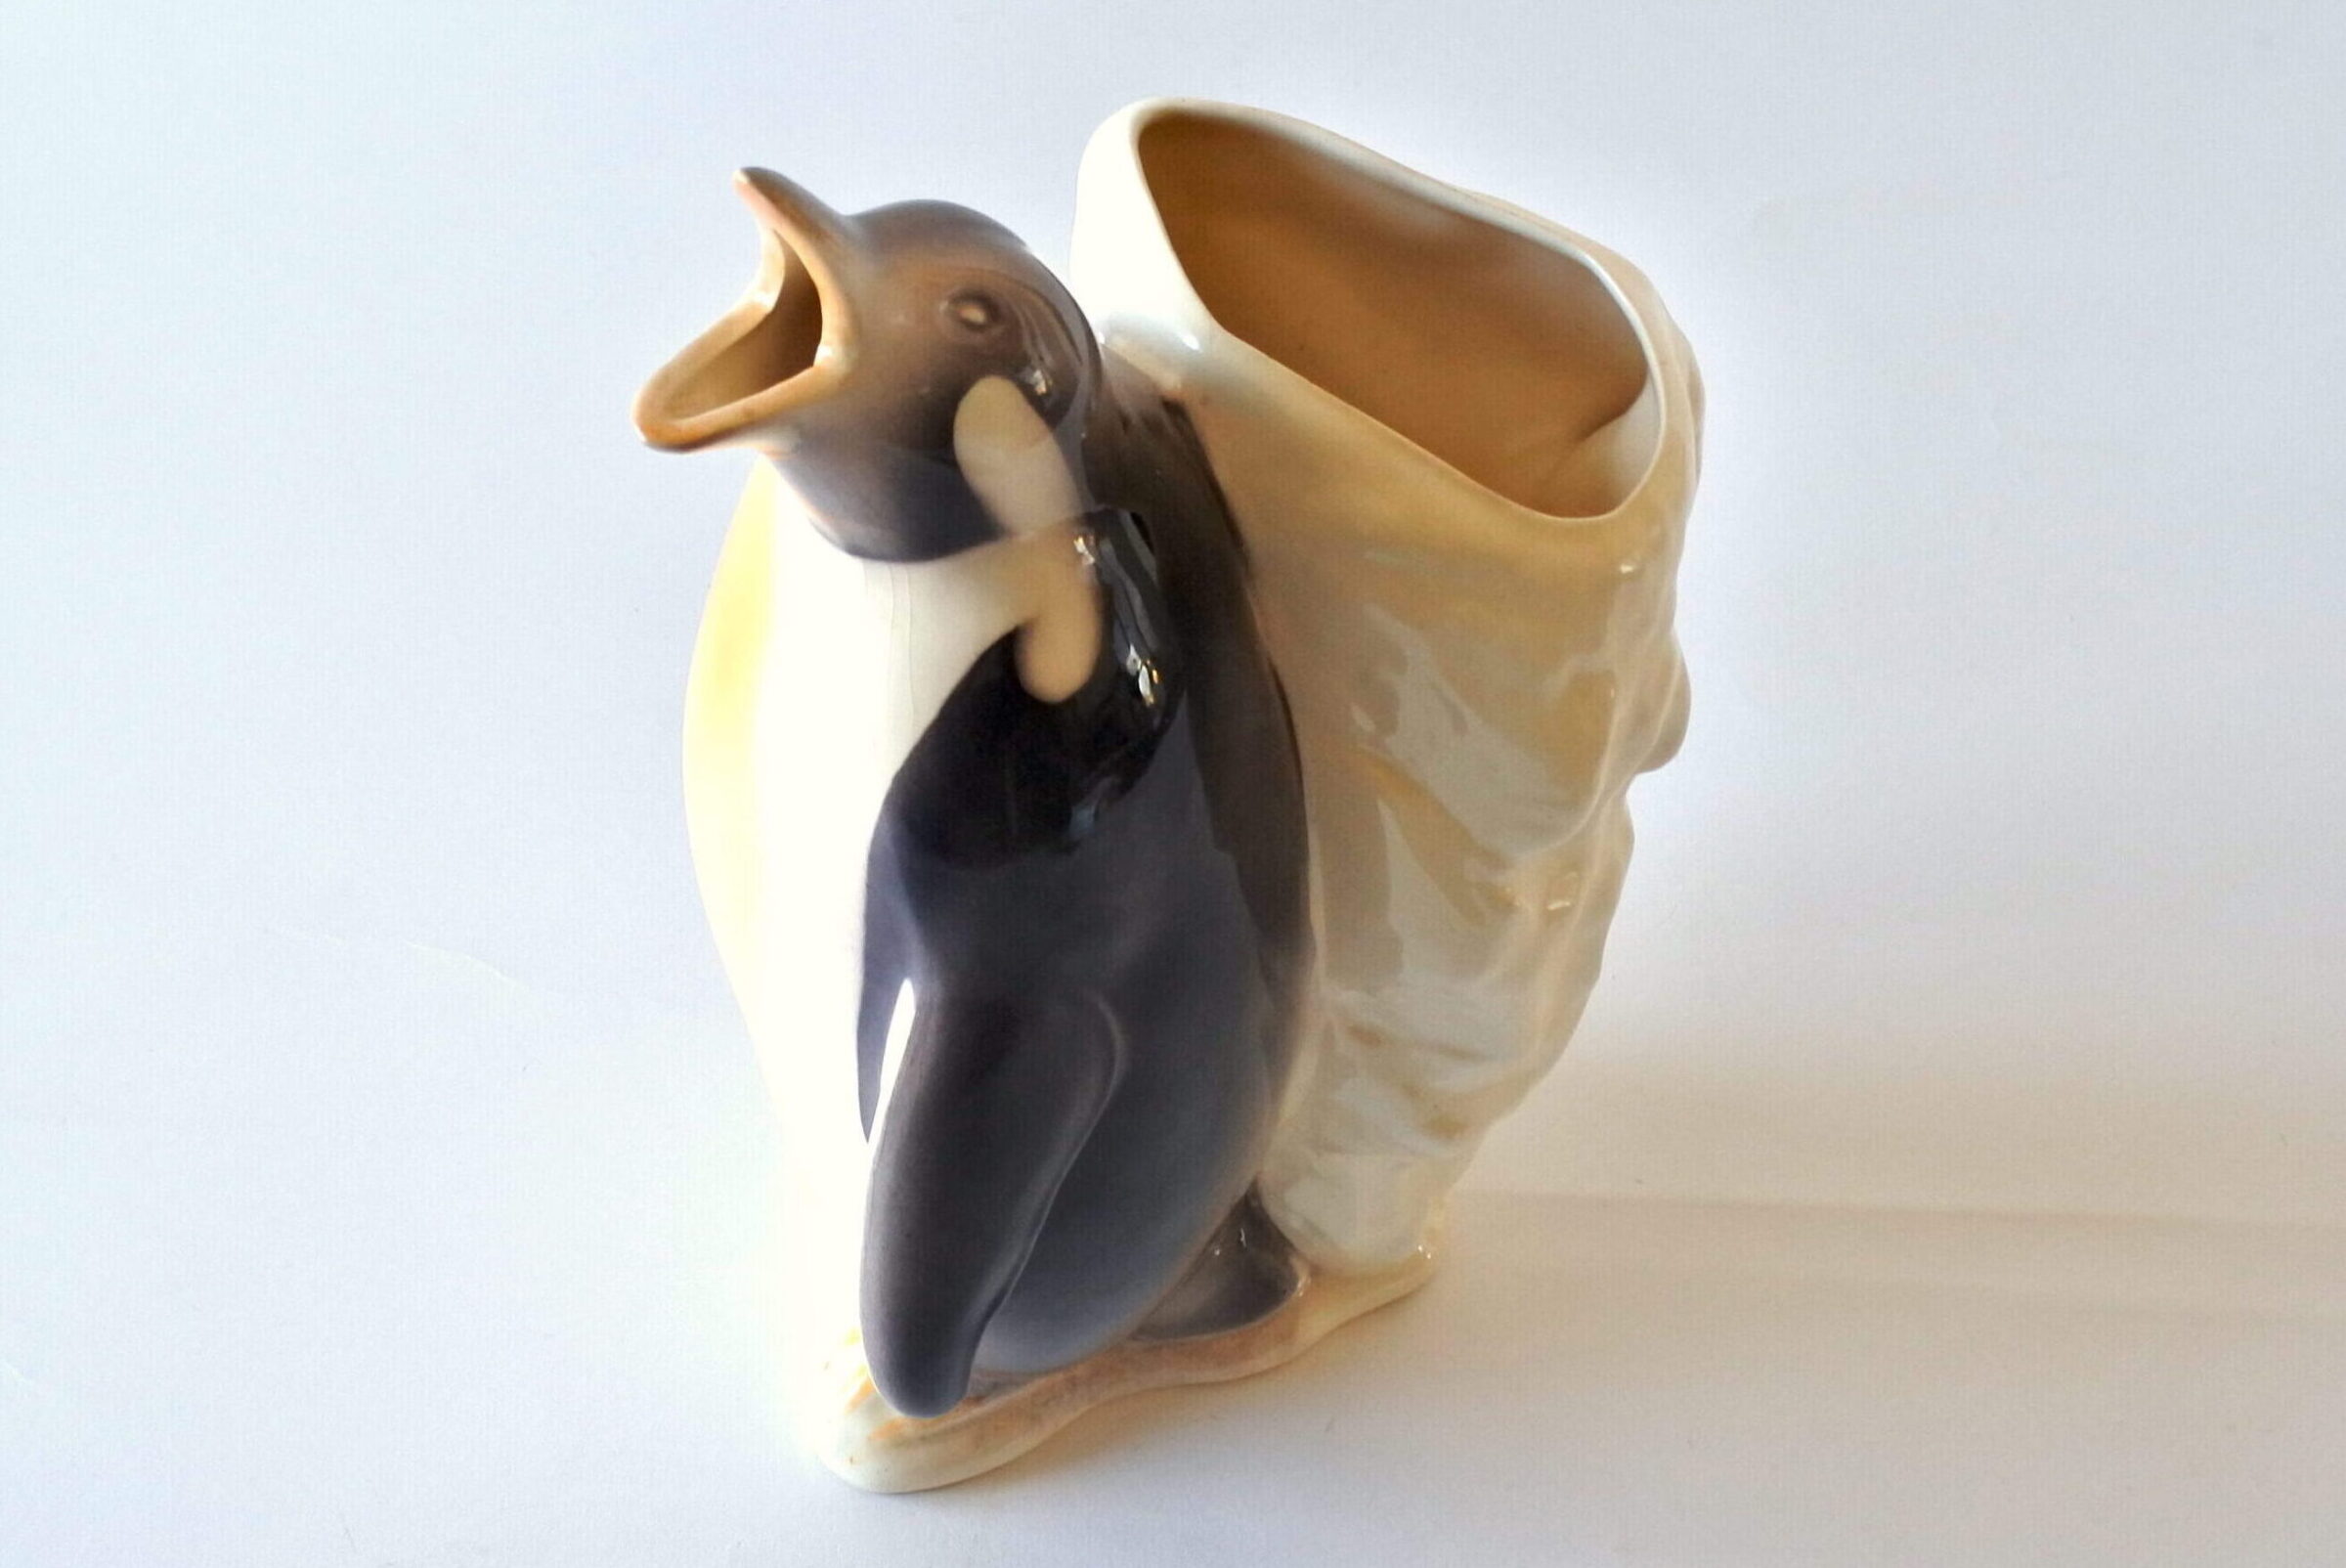 Brocca in ceramica barbotine a forma di pinguino con iceberg - 6